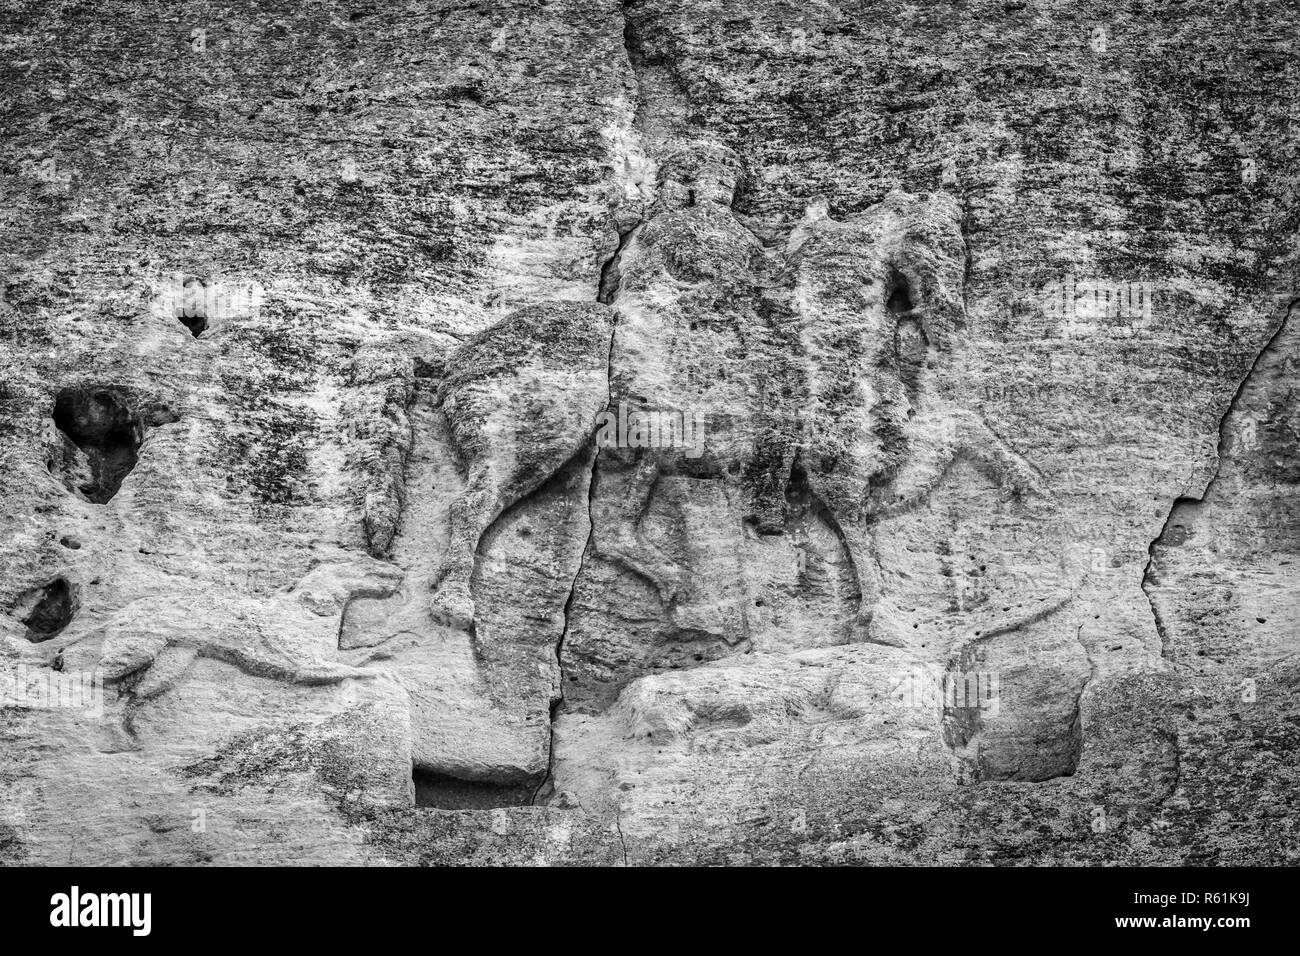 Reiter von Madara - eine archäologische Denkmal des frühen Mittelalters (Ende des 7. Jh.), ein Bild von einem Reiter auf einem steilen Felsen gehauen. Bulgarien. Schwarz und Weiß. Stockfoto